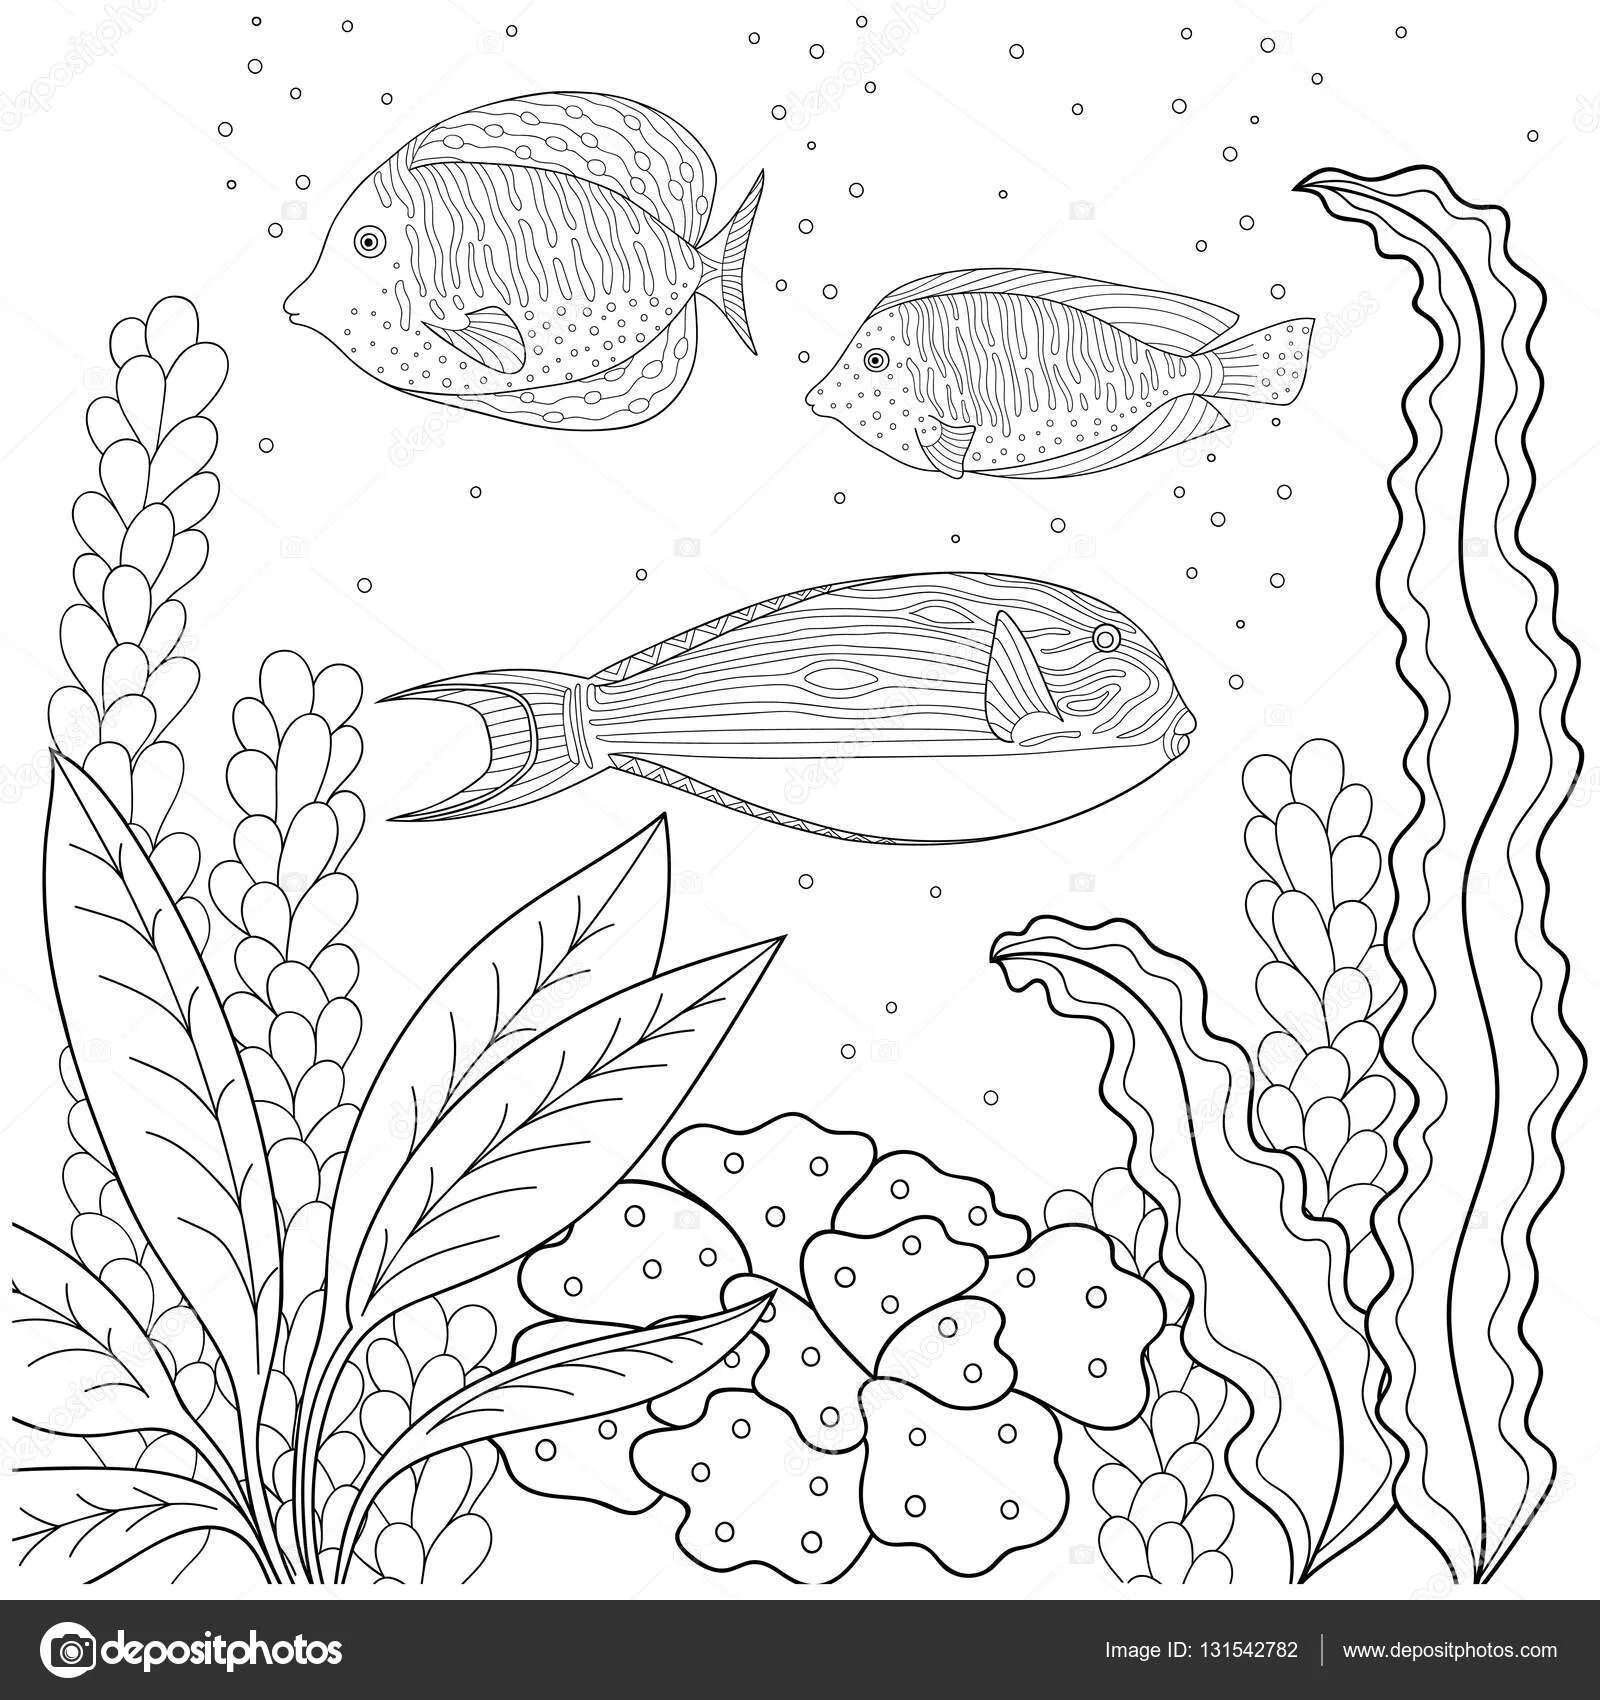 Очаровательная рыбка с водорослями раскраска